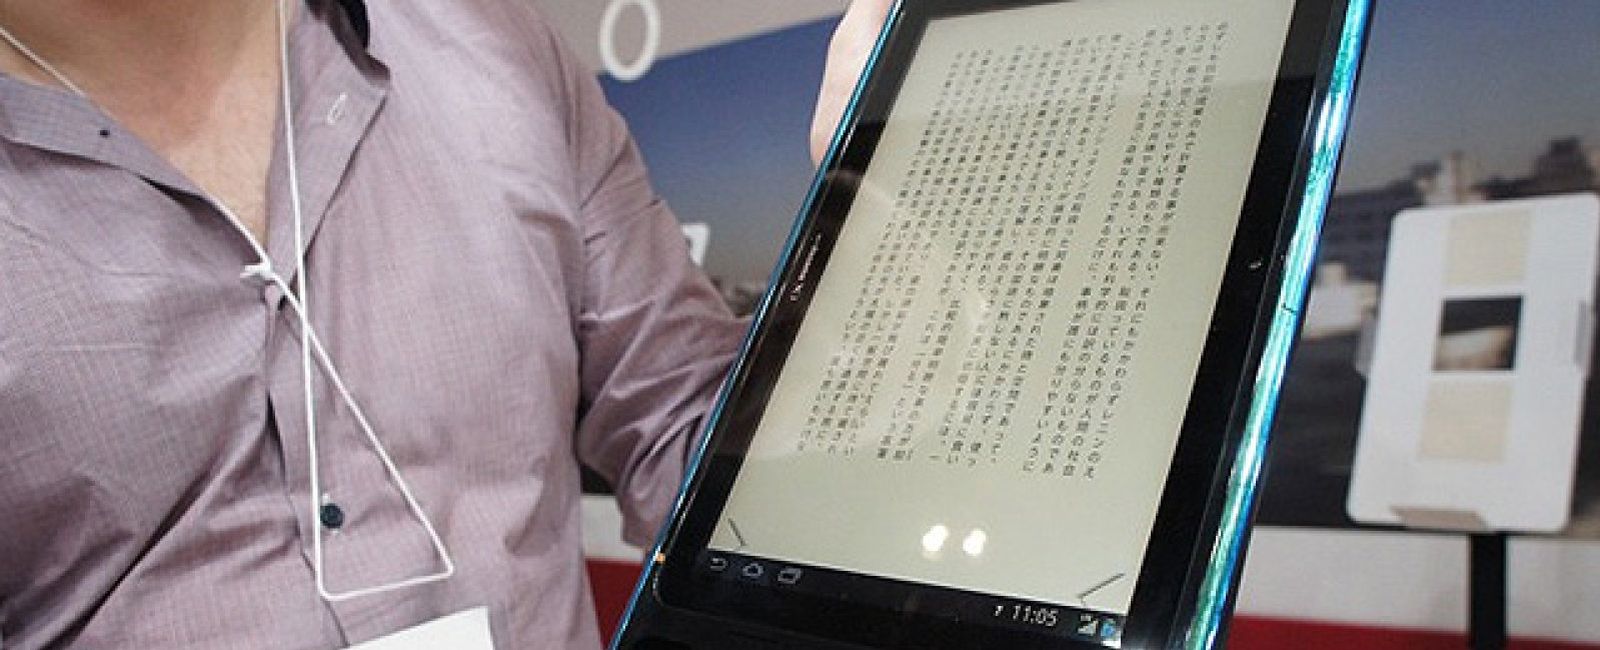 Foto: El más difícil todavía: NTT DoCoMo lanza una tableta capaz de ser controlada con la vista